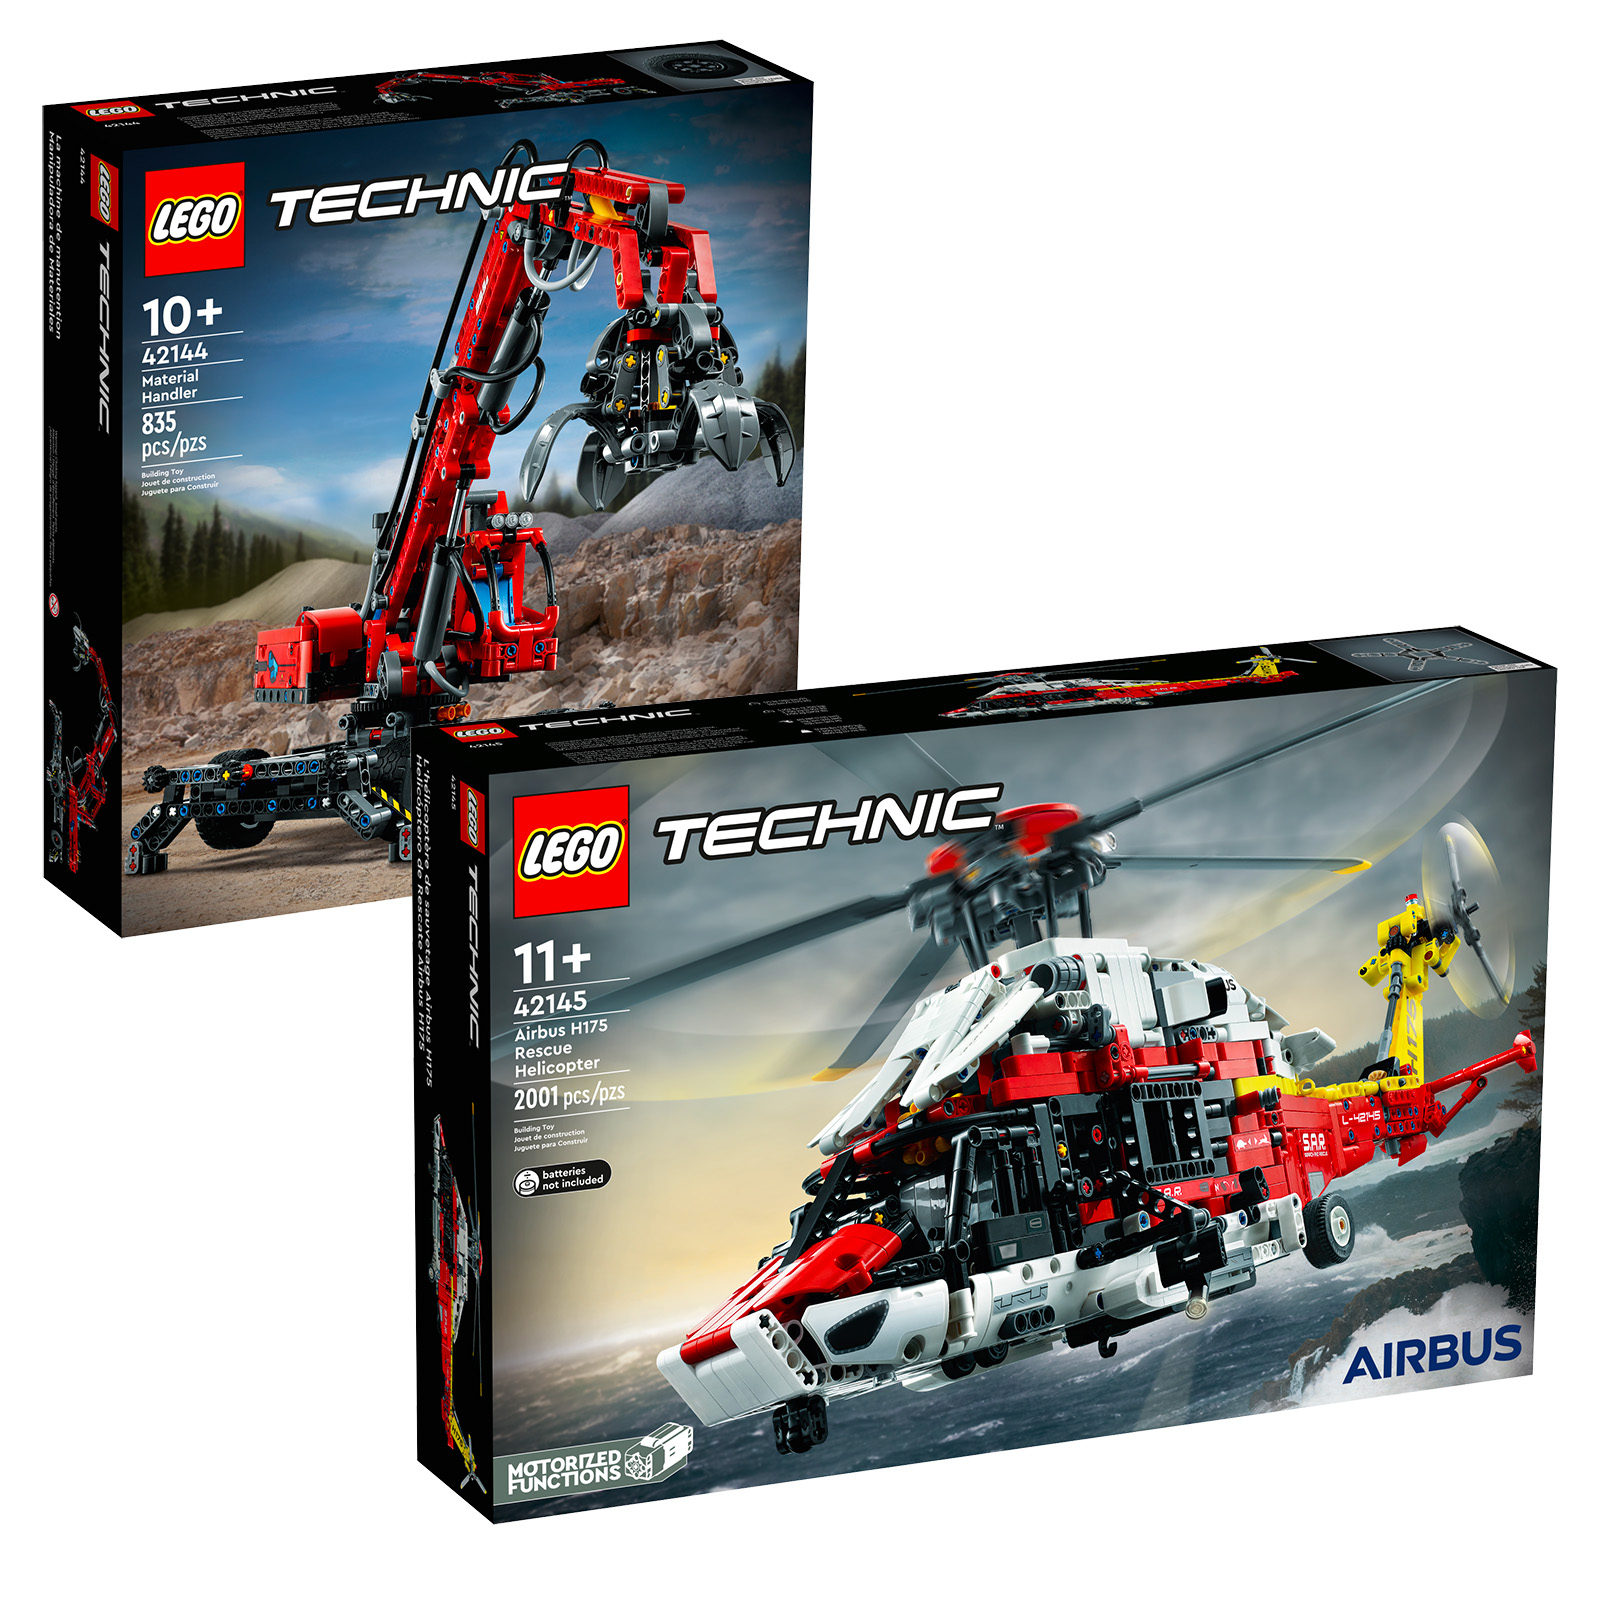 Am LEGO Shop: LEGO Technic 42144 Material Handler an 42145 Airbus H175 Rettungshelikopter Sets sinn online